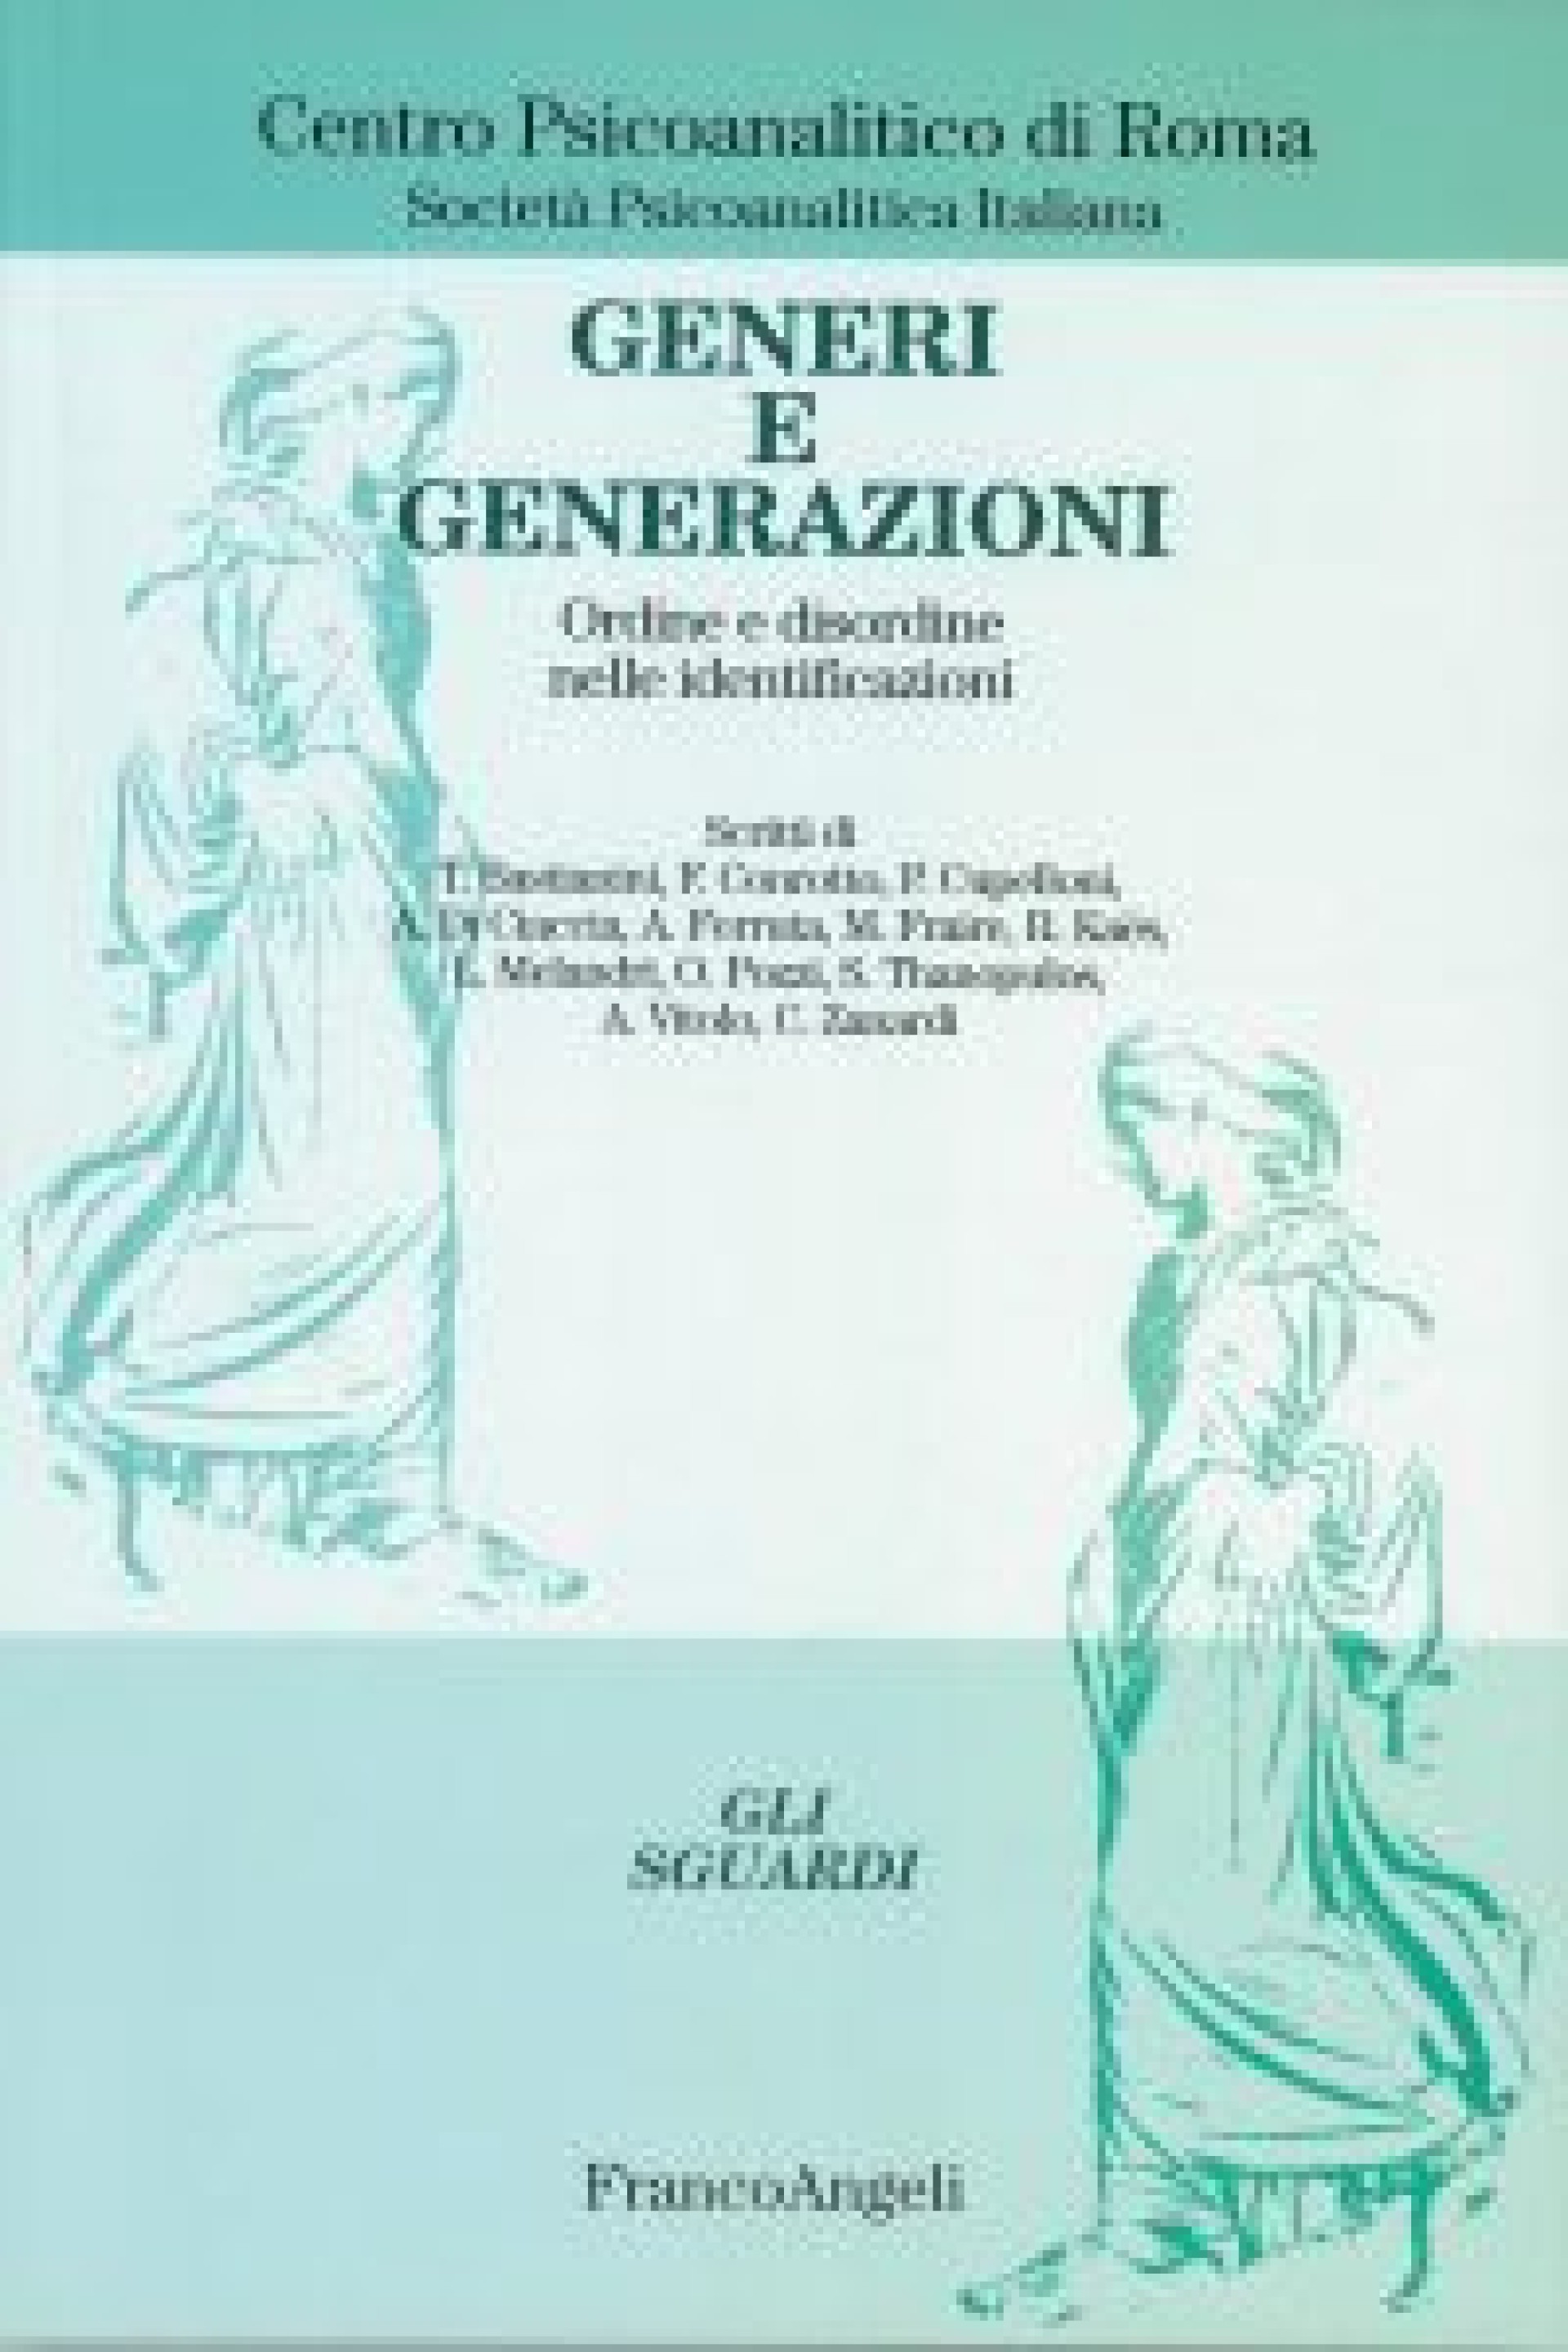 Quaderni del Centro Psicoanalitico di Roma n.2